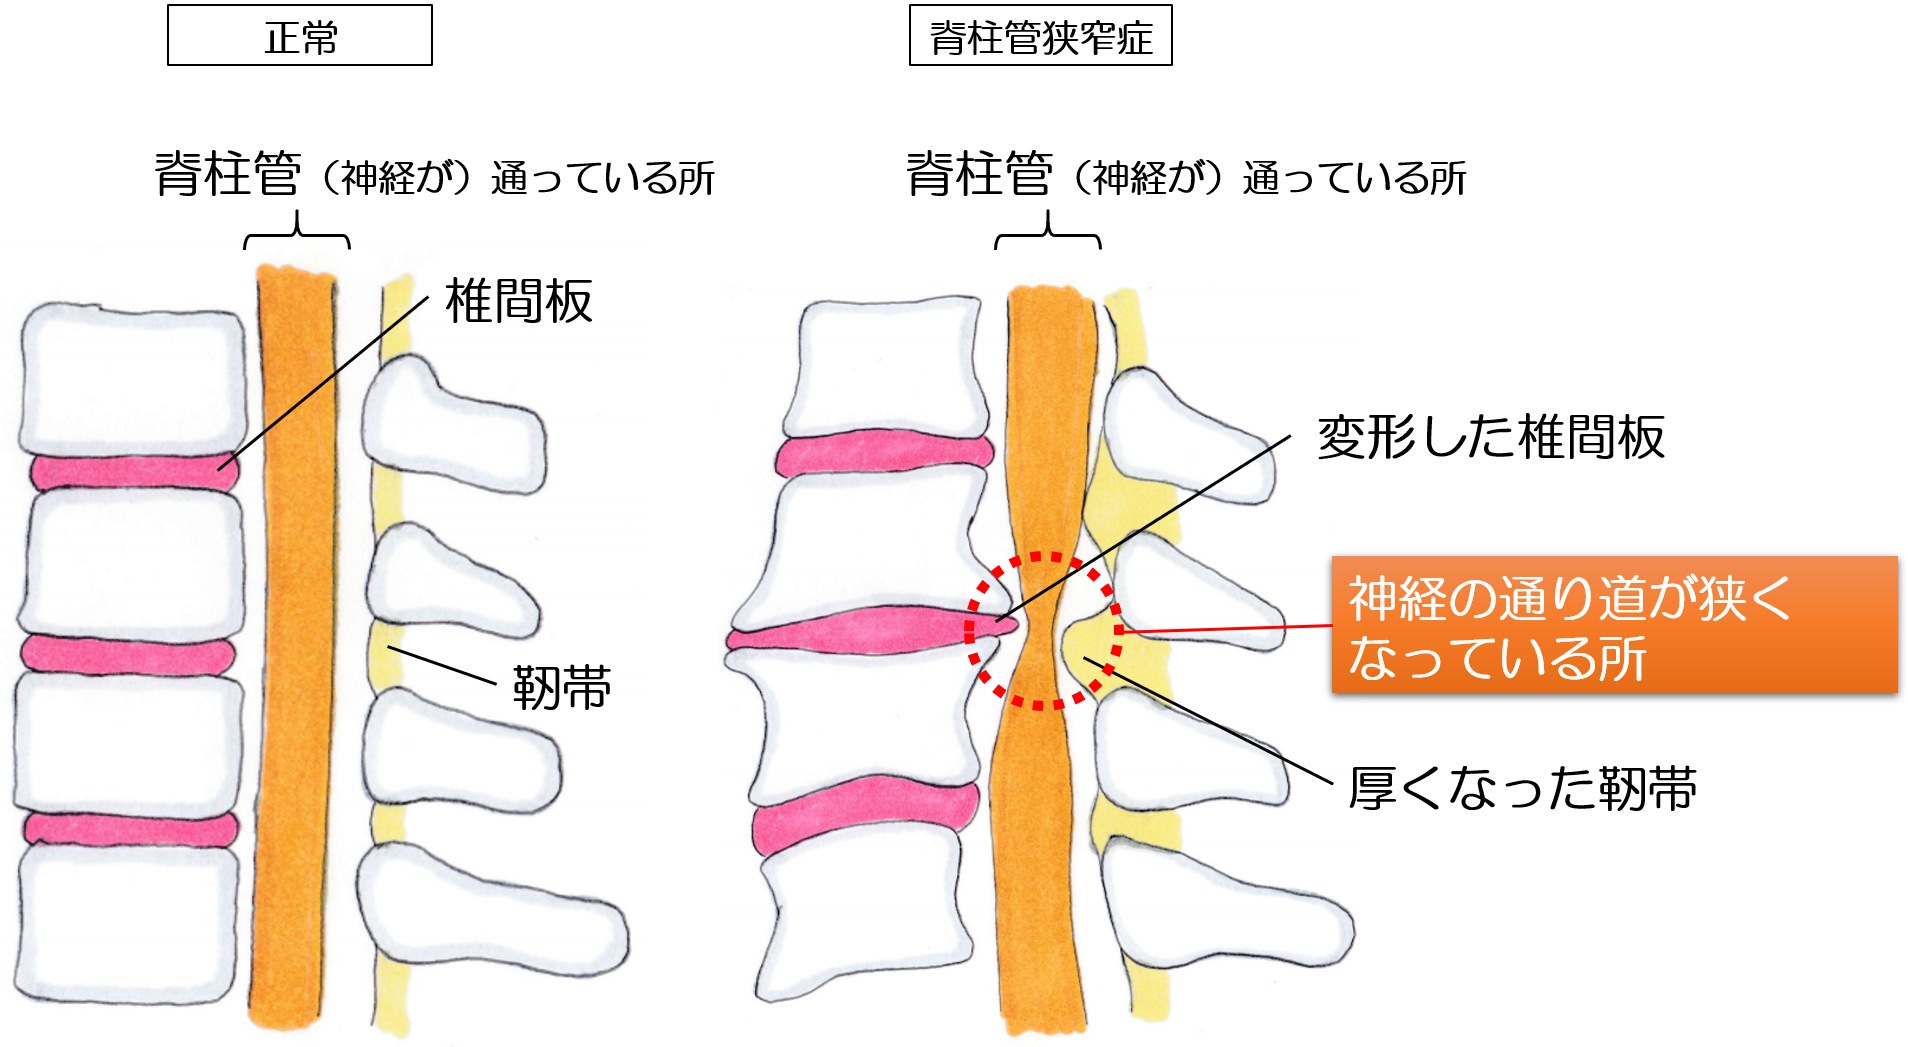 脊柱管狭窄症の画像